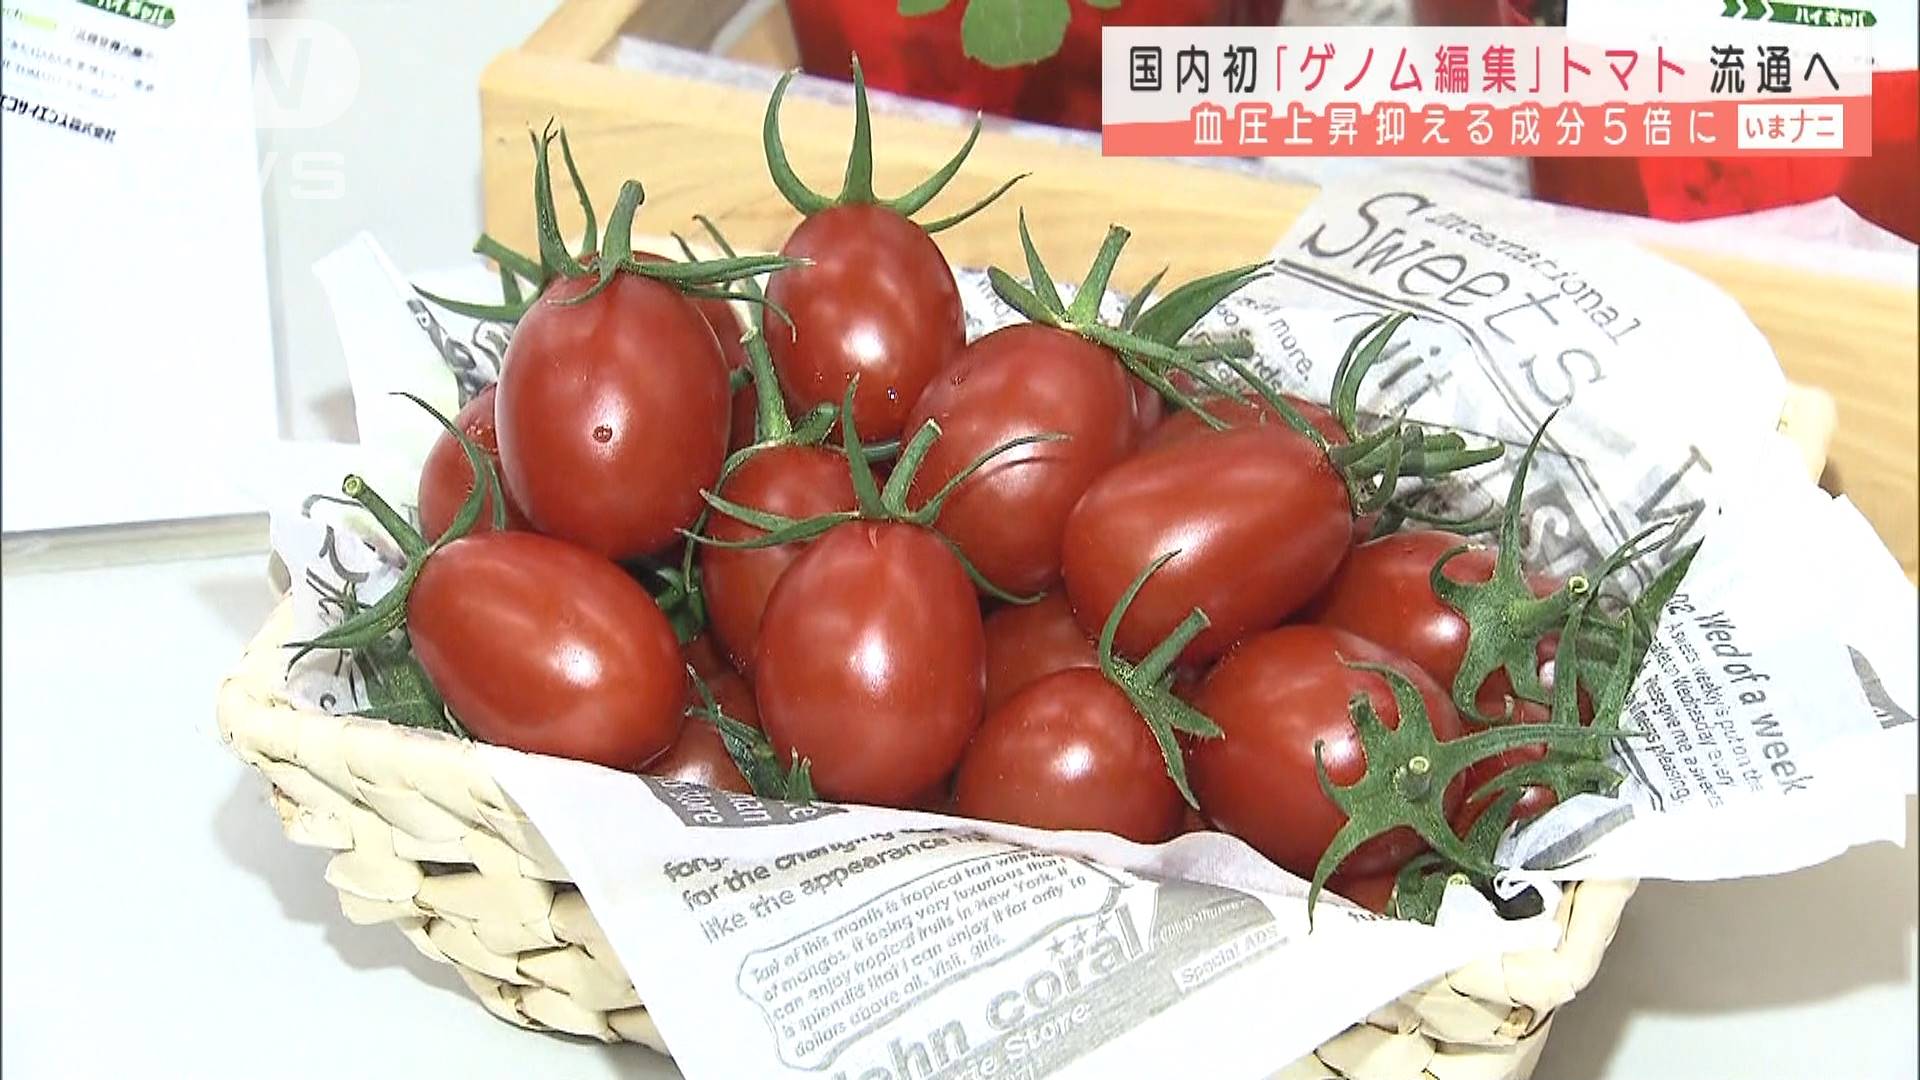 ゲノム編集 トマト 血圧上昇抑える成分5倍も テレ朝news テレビ朝日のニュースサイト